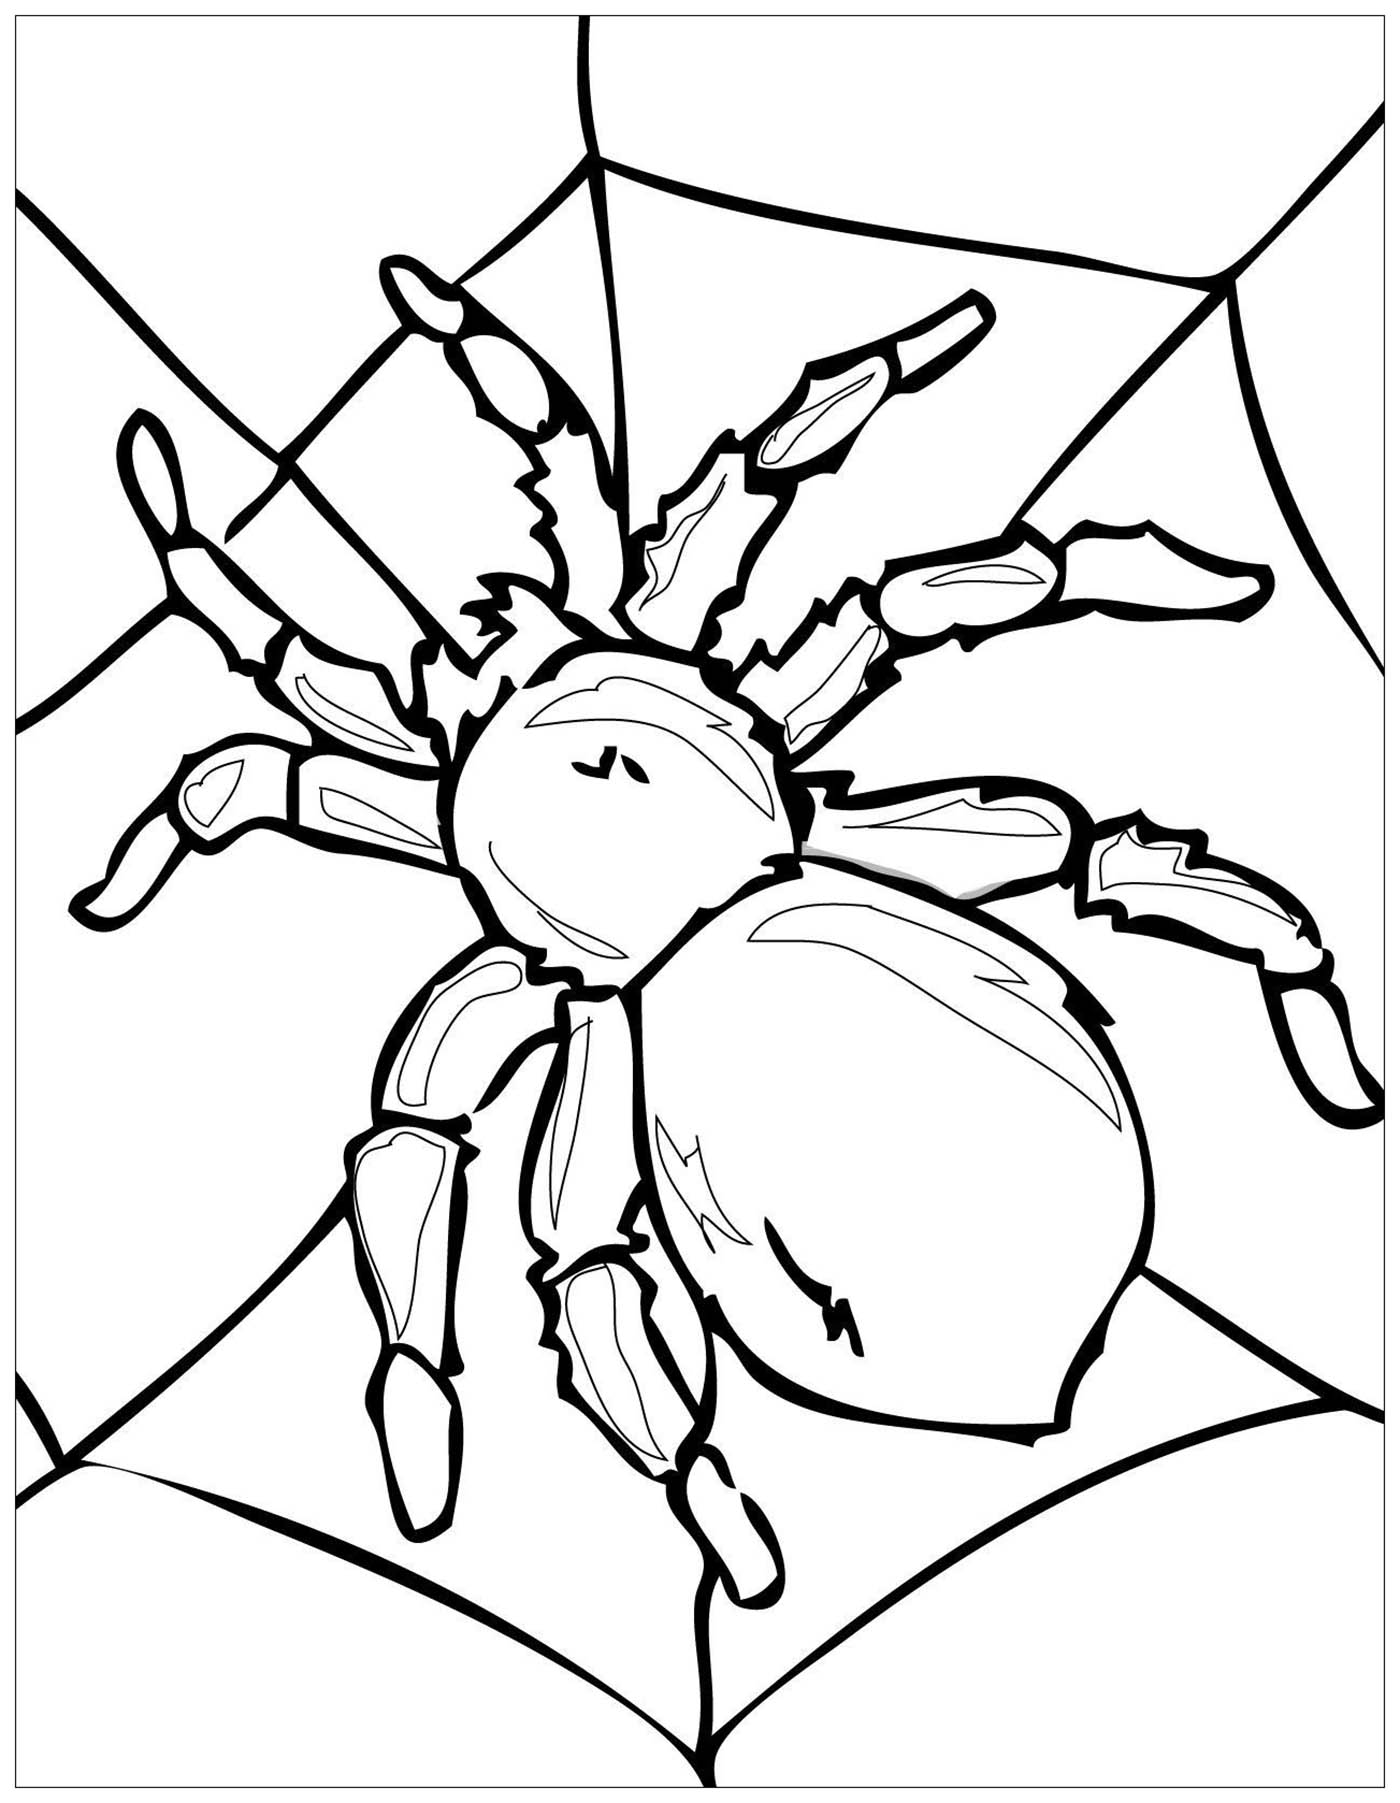 Une grosse araignée sur sa toile !